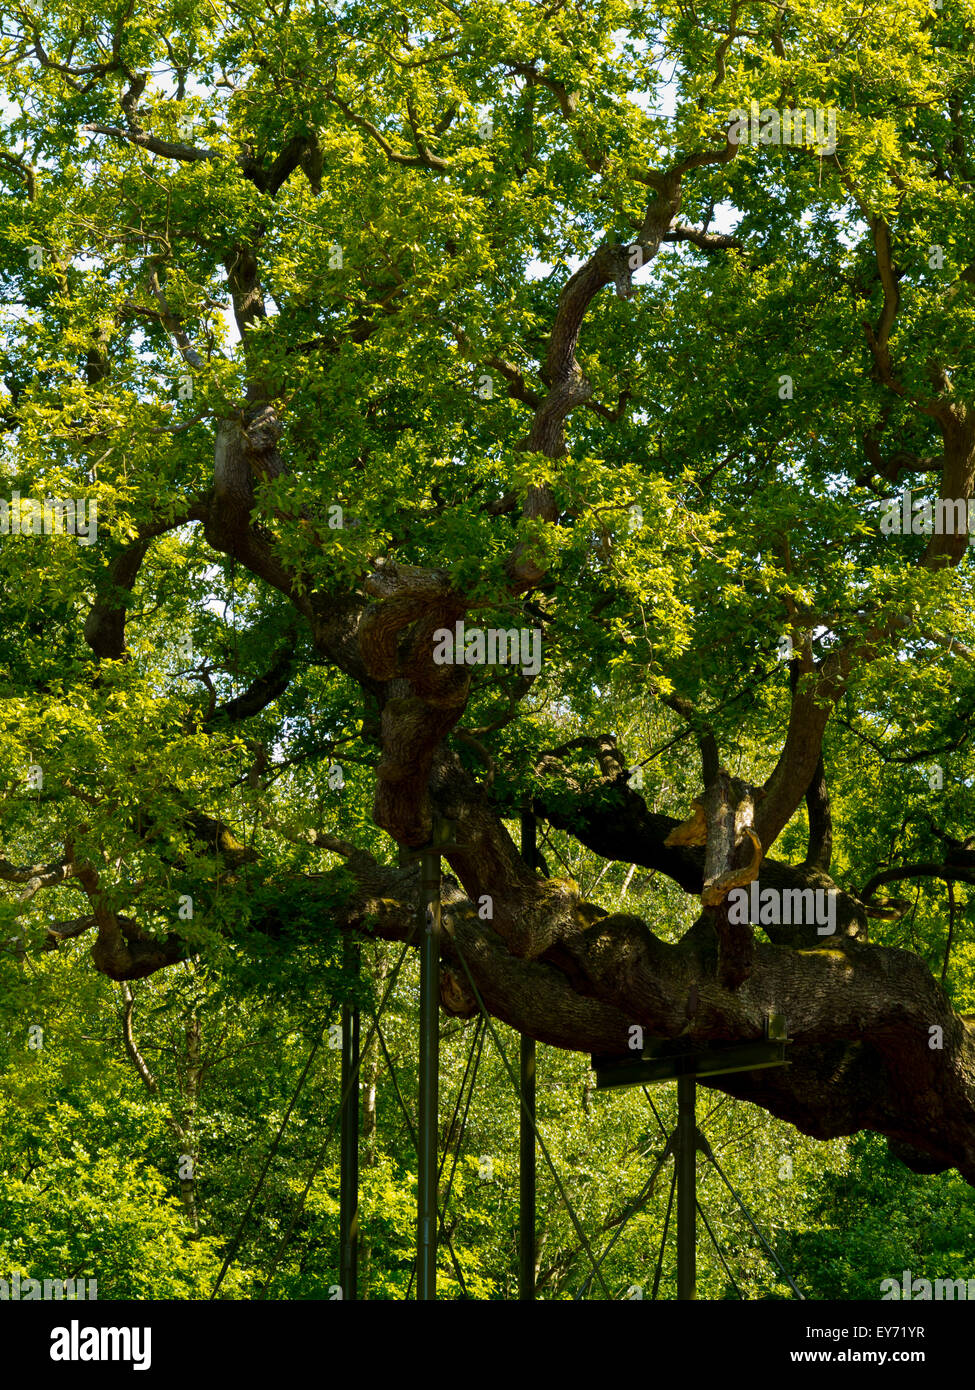 Unterstützungen zu Filialen auf großen Eiche Baum Quercus Robur in Sherwood Forest Nottinghamshire England Großbritannien, die etwa 1000 Jahre alt ist Stockfoto